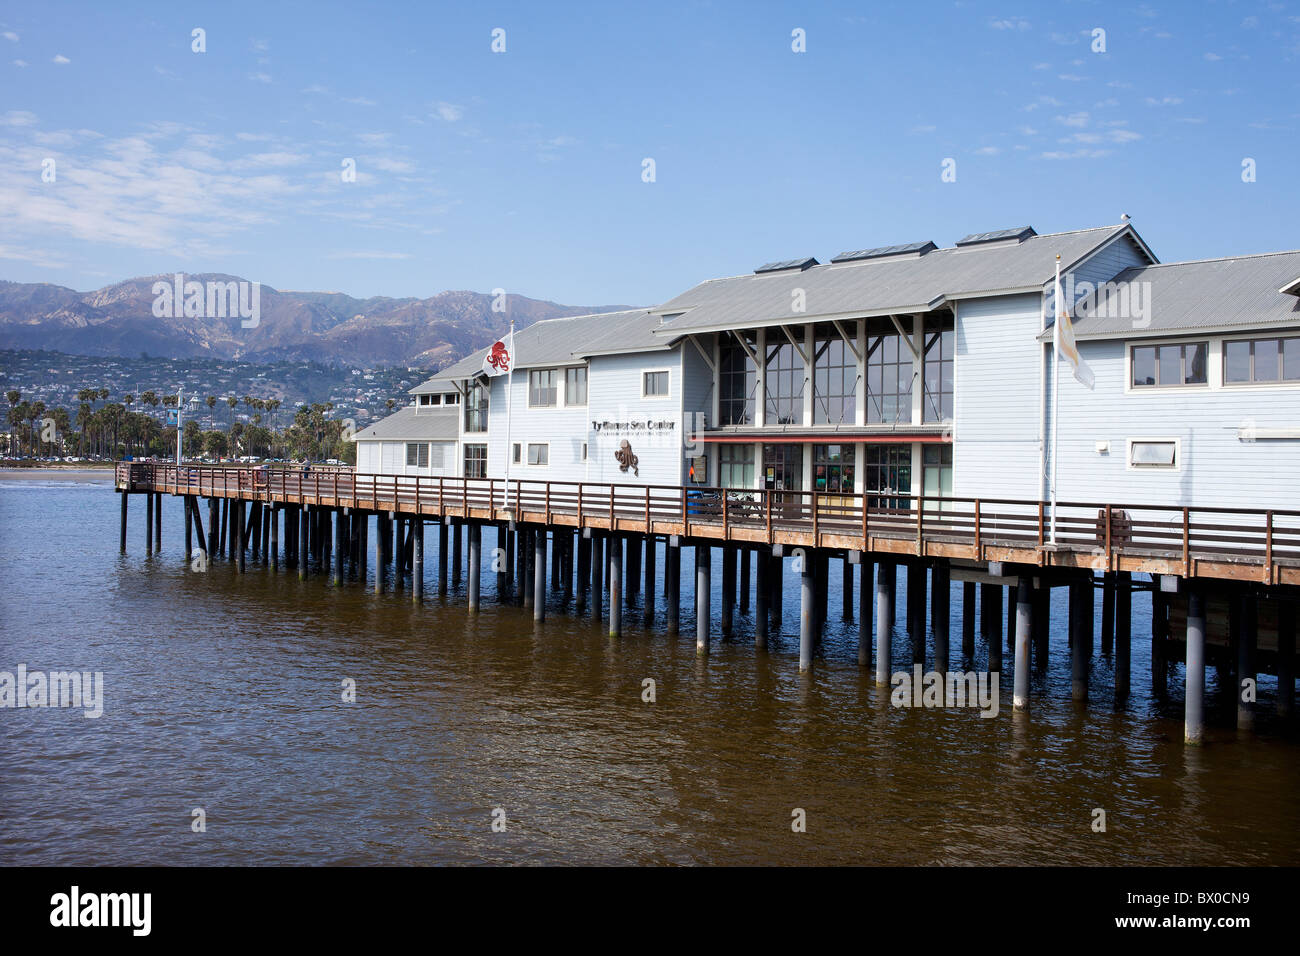 Le Ty Warner Sea Center museum situé sur le quartier historique de Santa Barbara en Californie USA Stearns Wharf Banque D'Images